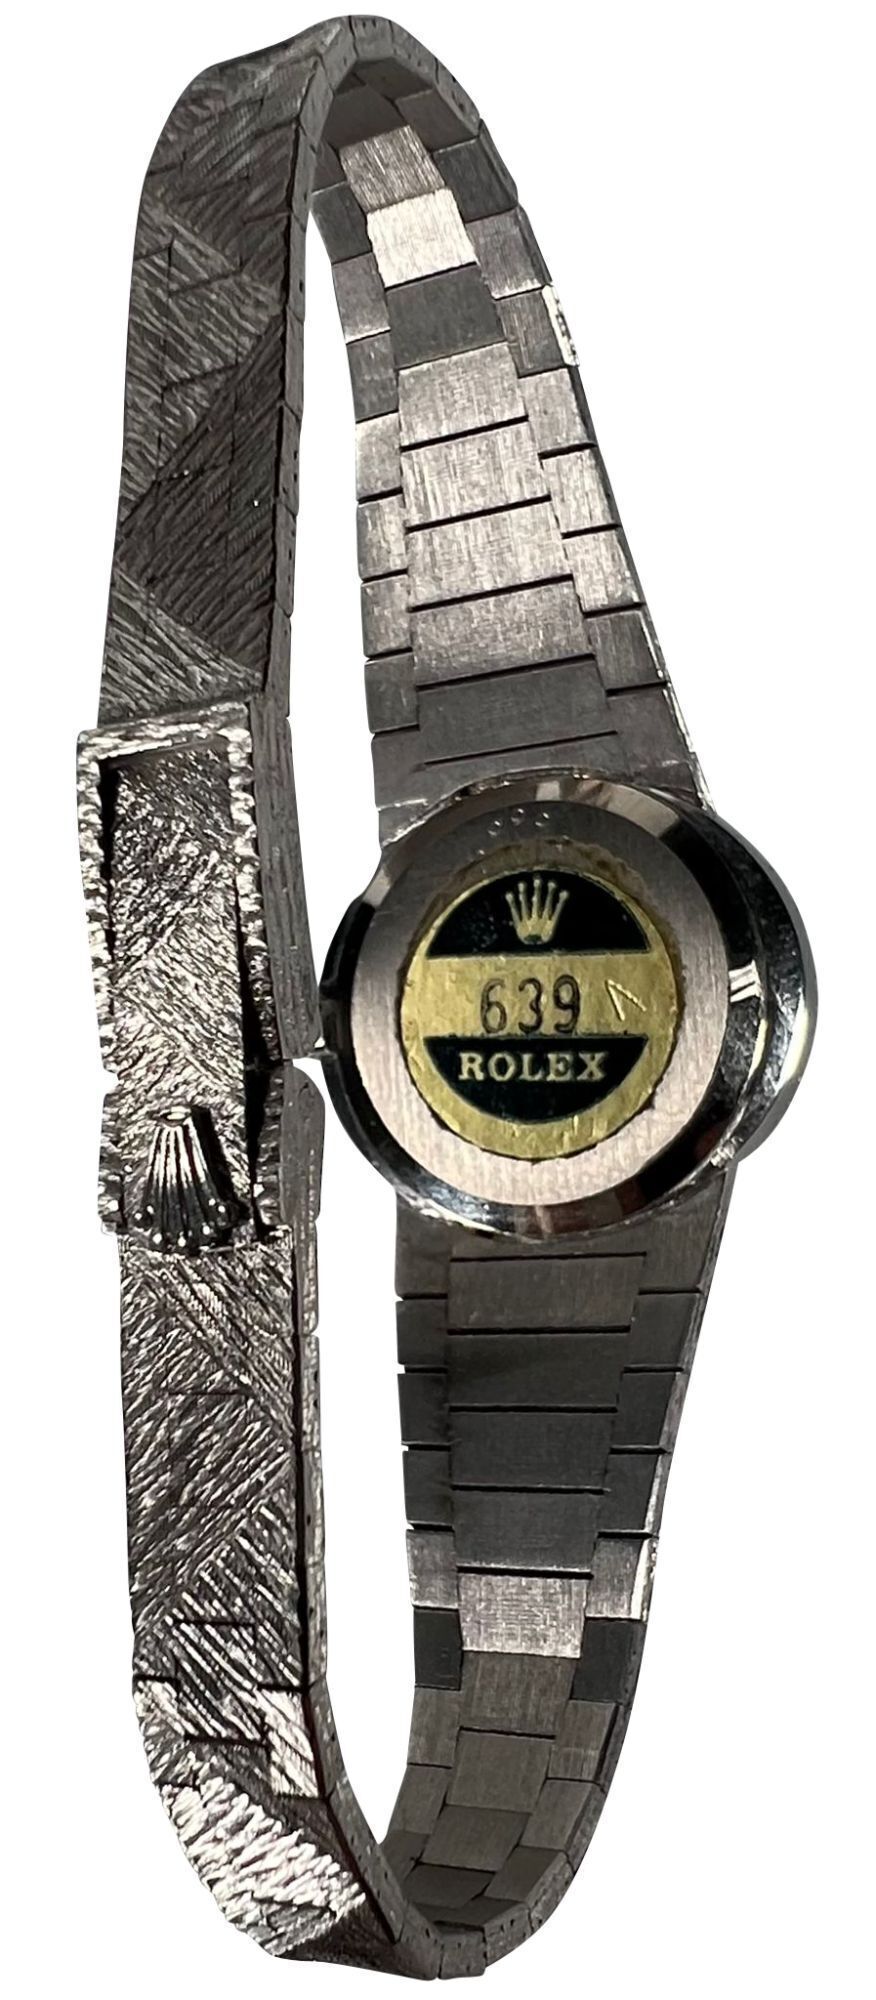 Rolex Cellini Ref. 639 18K White Gold Dress Watch with Diamond Bezel - 3